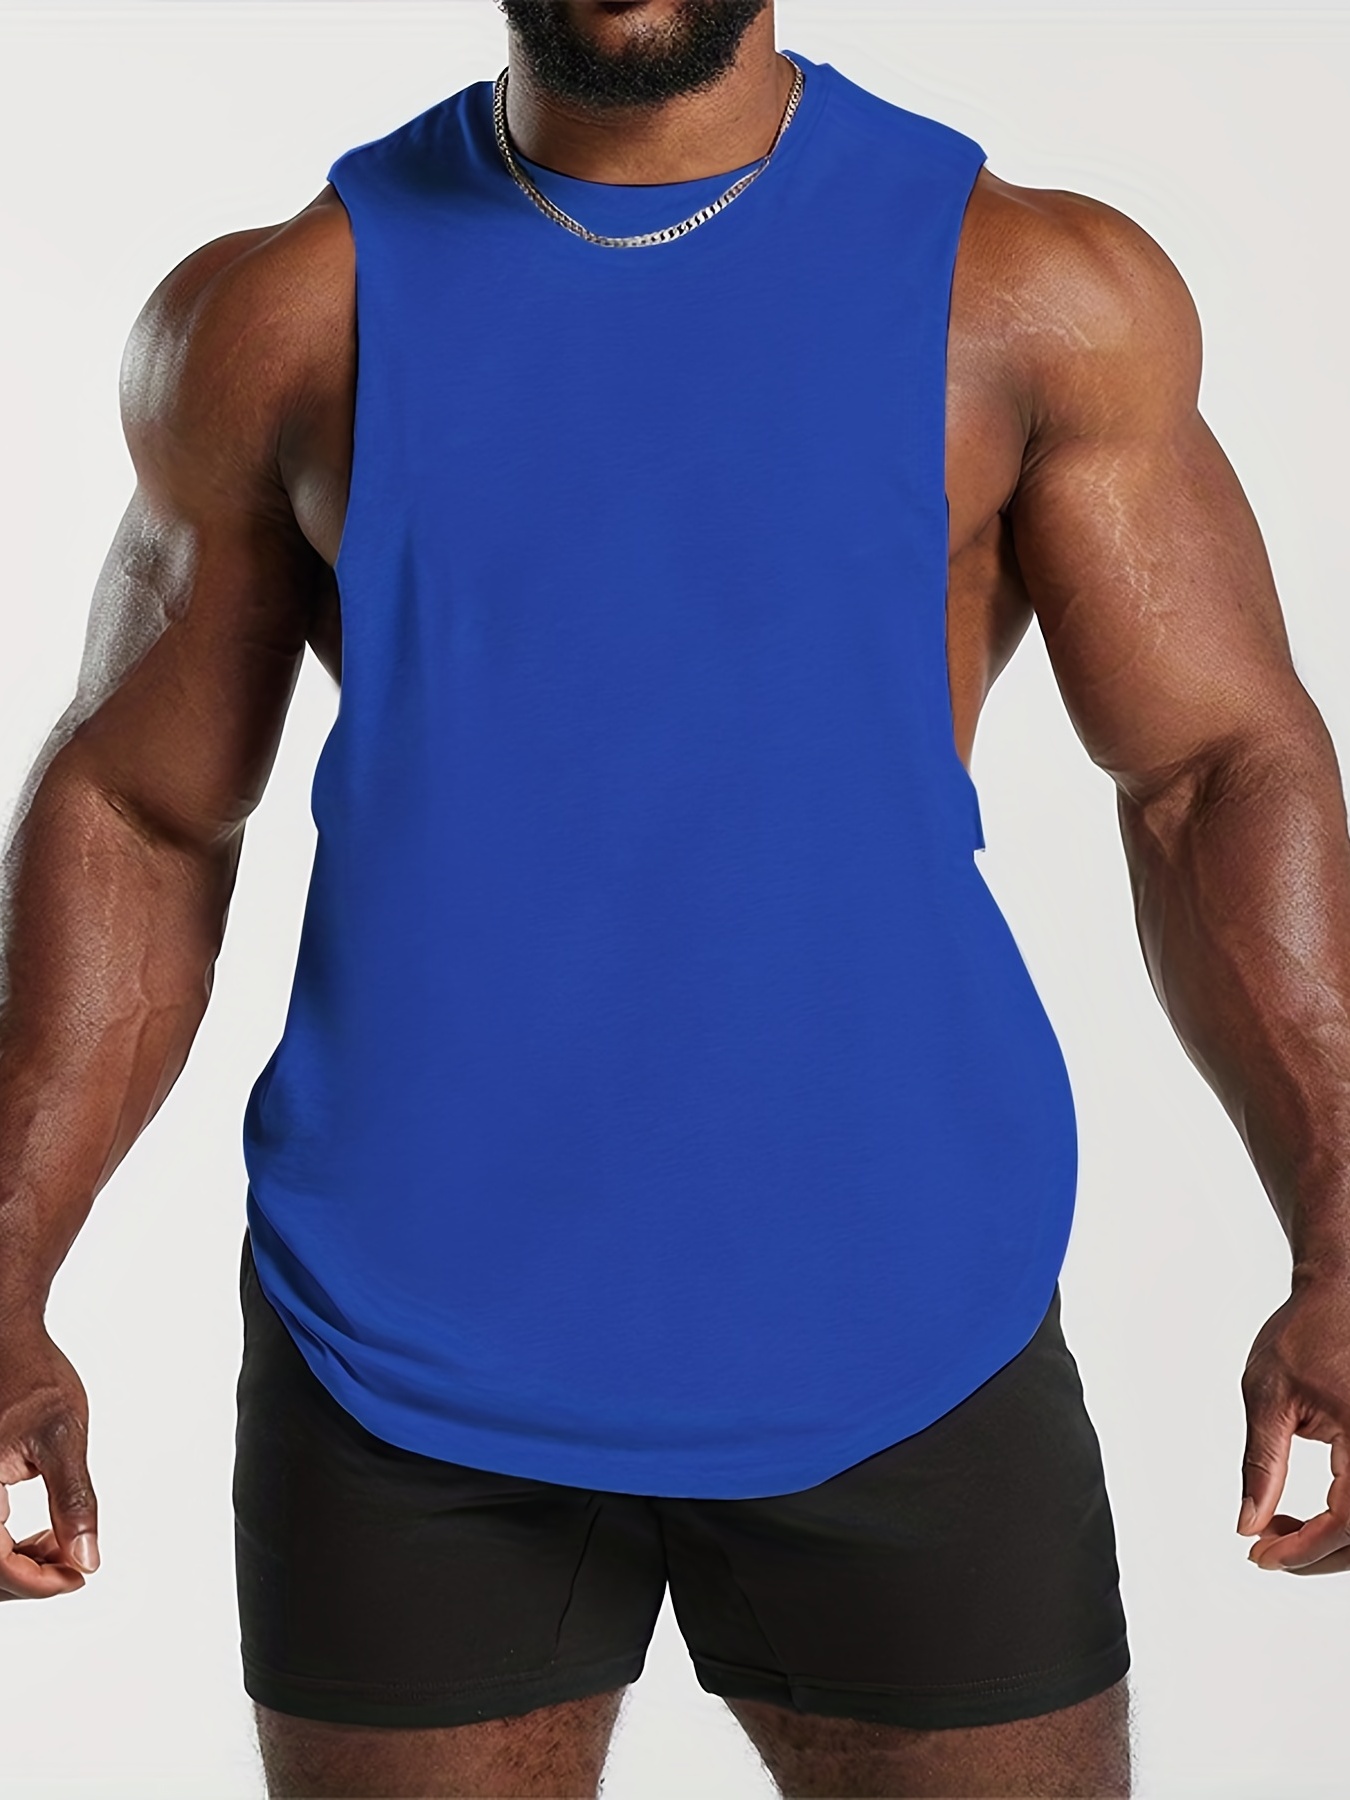 Camiseta Sin Mangas Con Estampado Elevate Your Fitness And Life, Camisetas  Interiores Activas Para Hombre Para Hacer Ejercicio En El Gimnasio - Temu